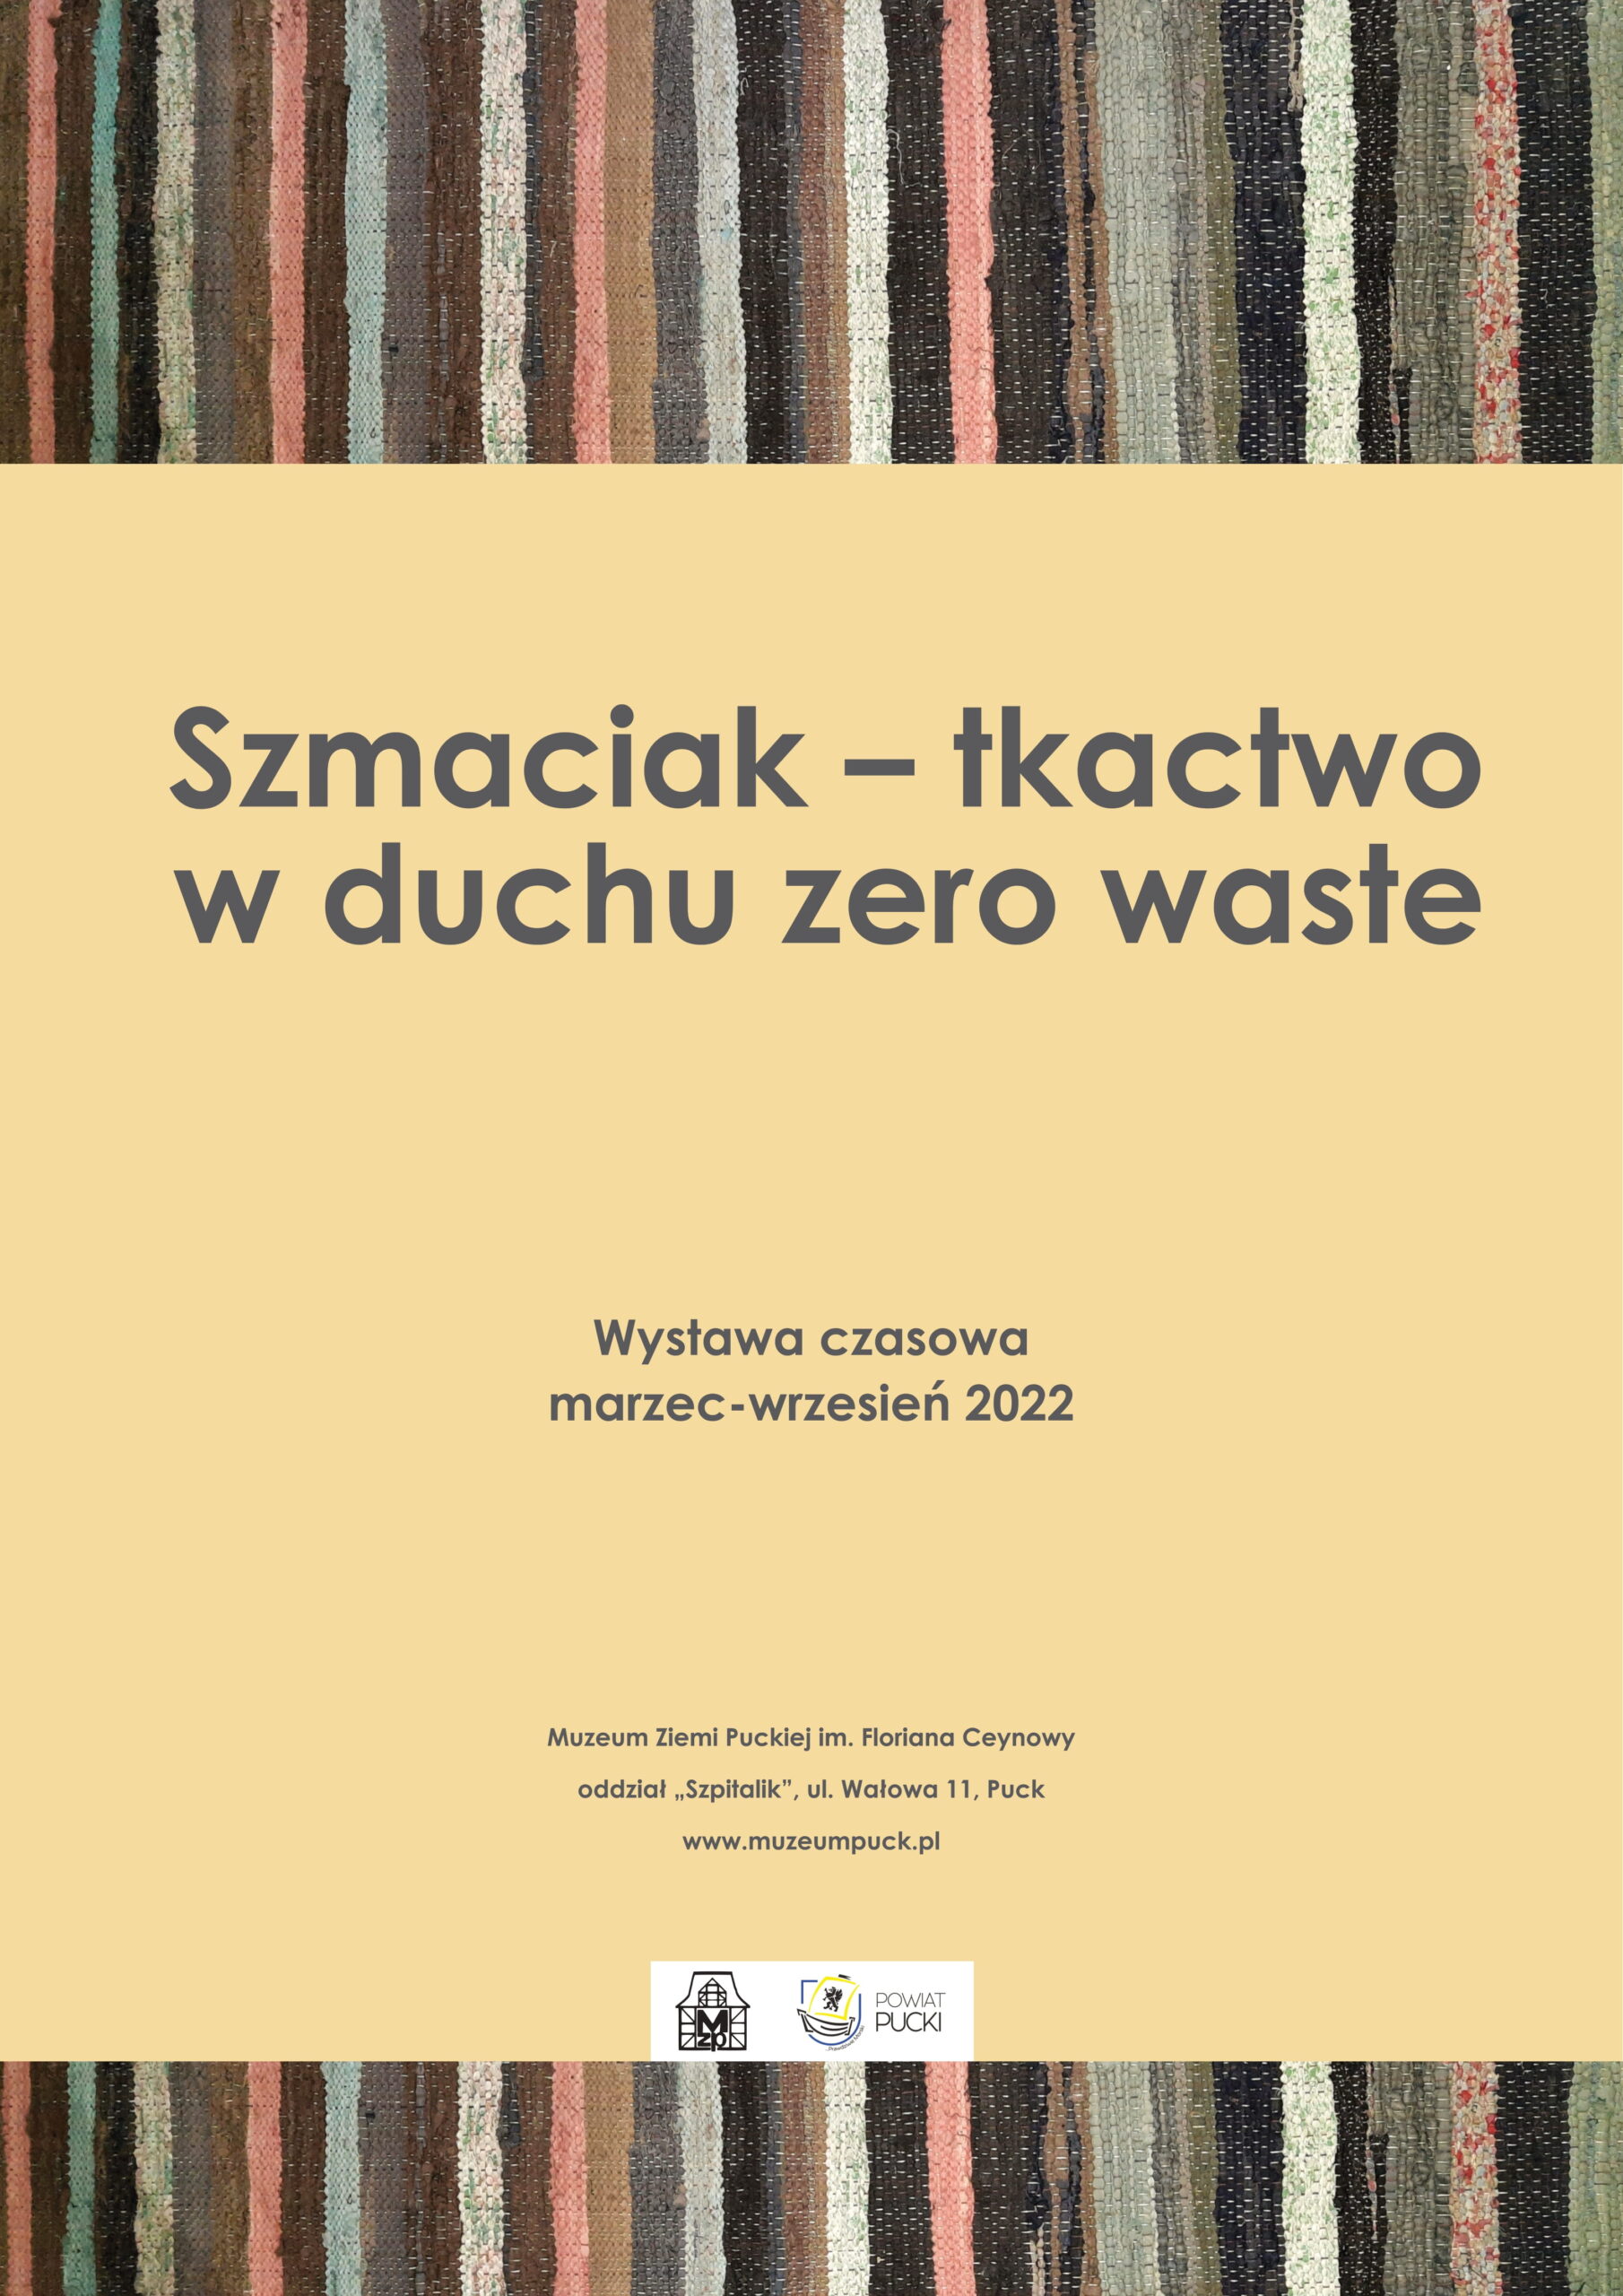 Plakat wystawy Szmacik- tkactwo w duchu zero waste. NA środku znajduje się logo Muzeum Ziemi Puckiej i Starostwa Powiatowego w Pucku